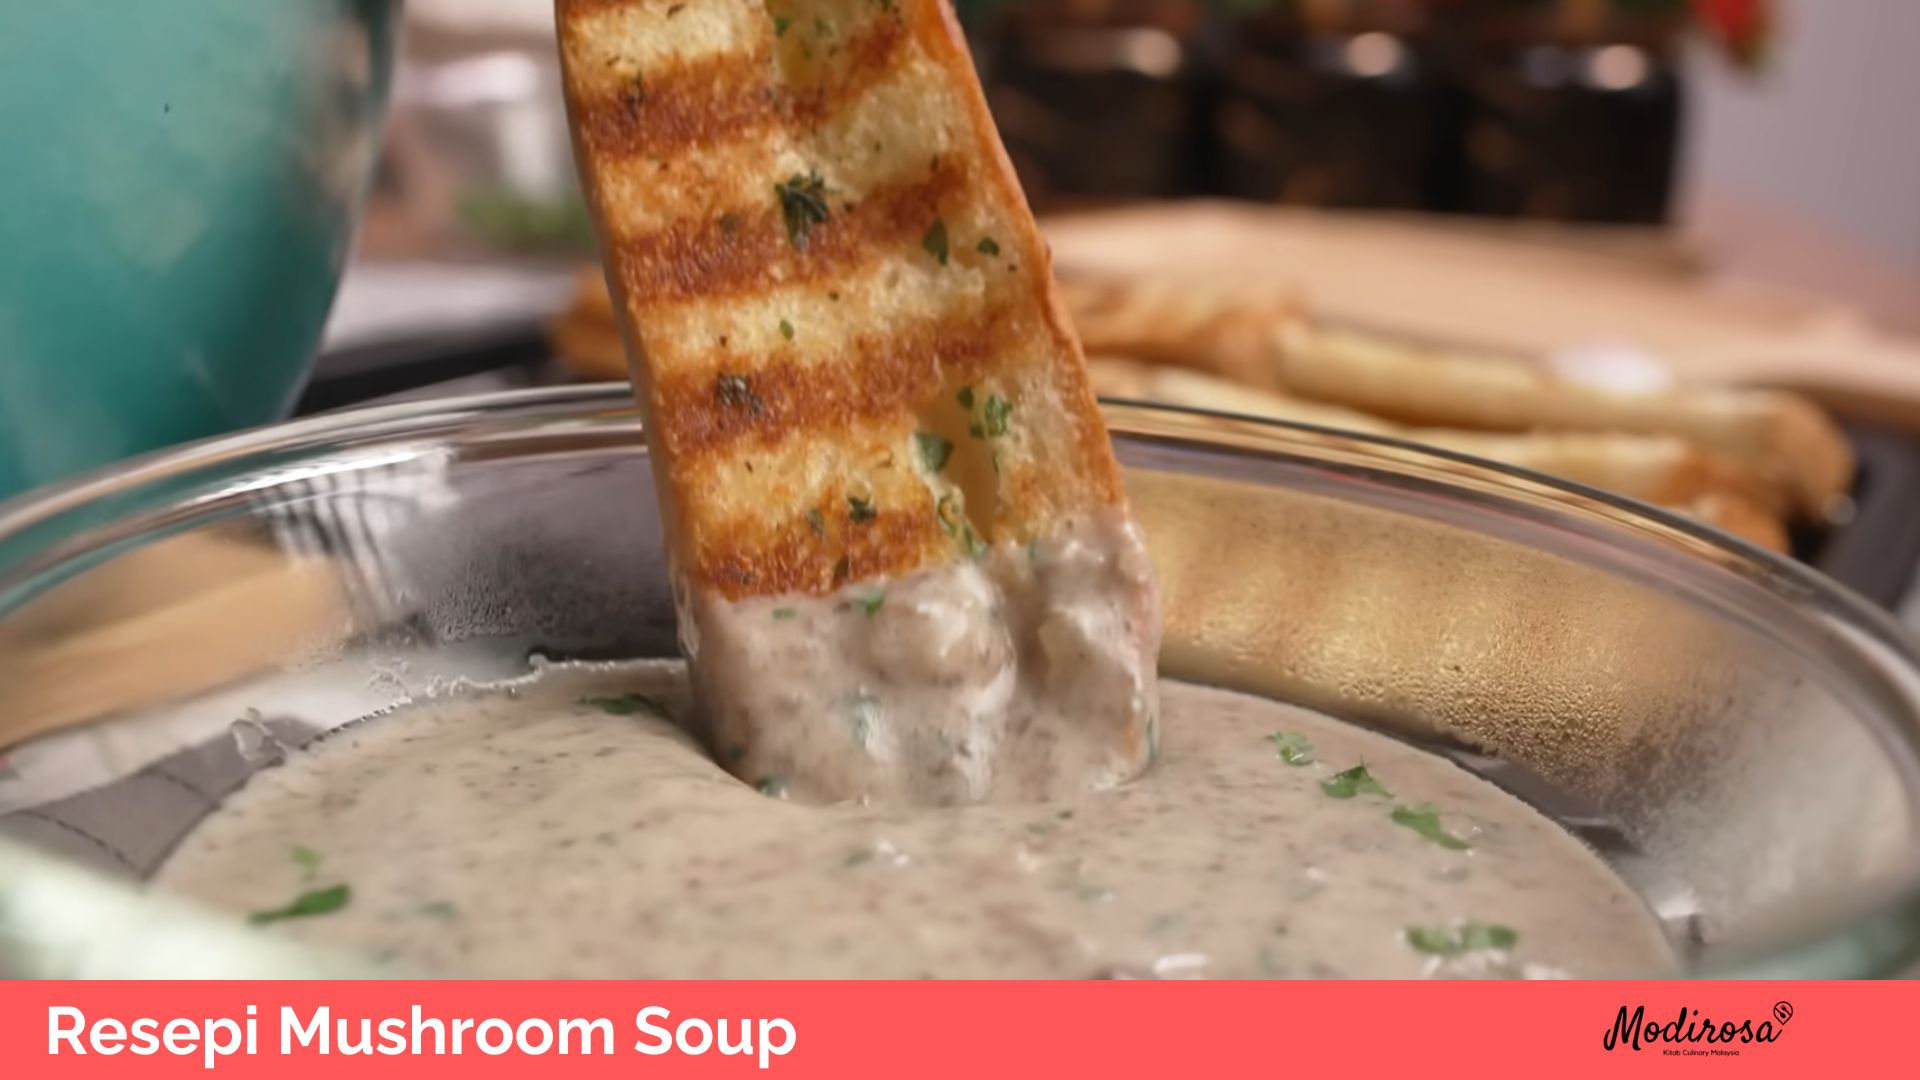 Resepi Mushroom Soup 1